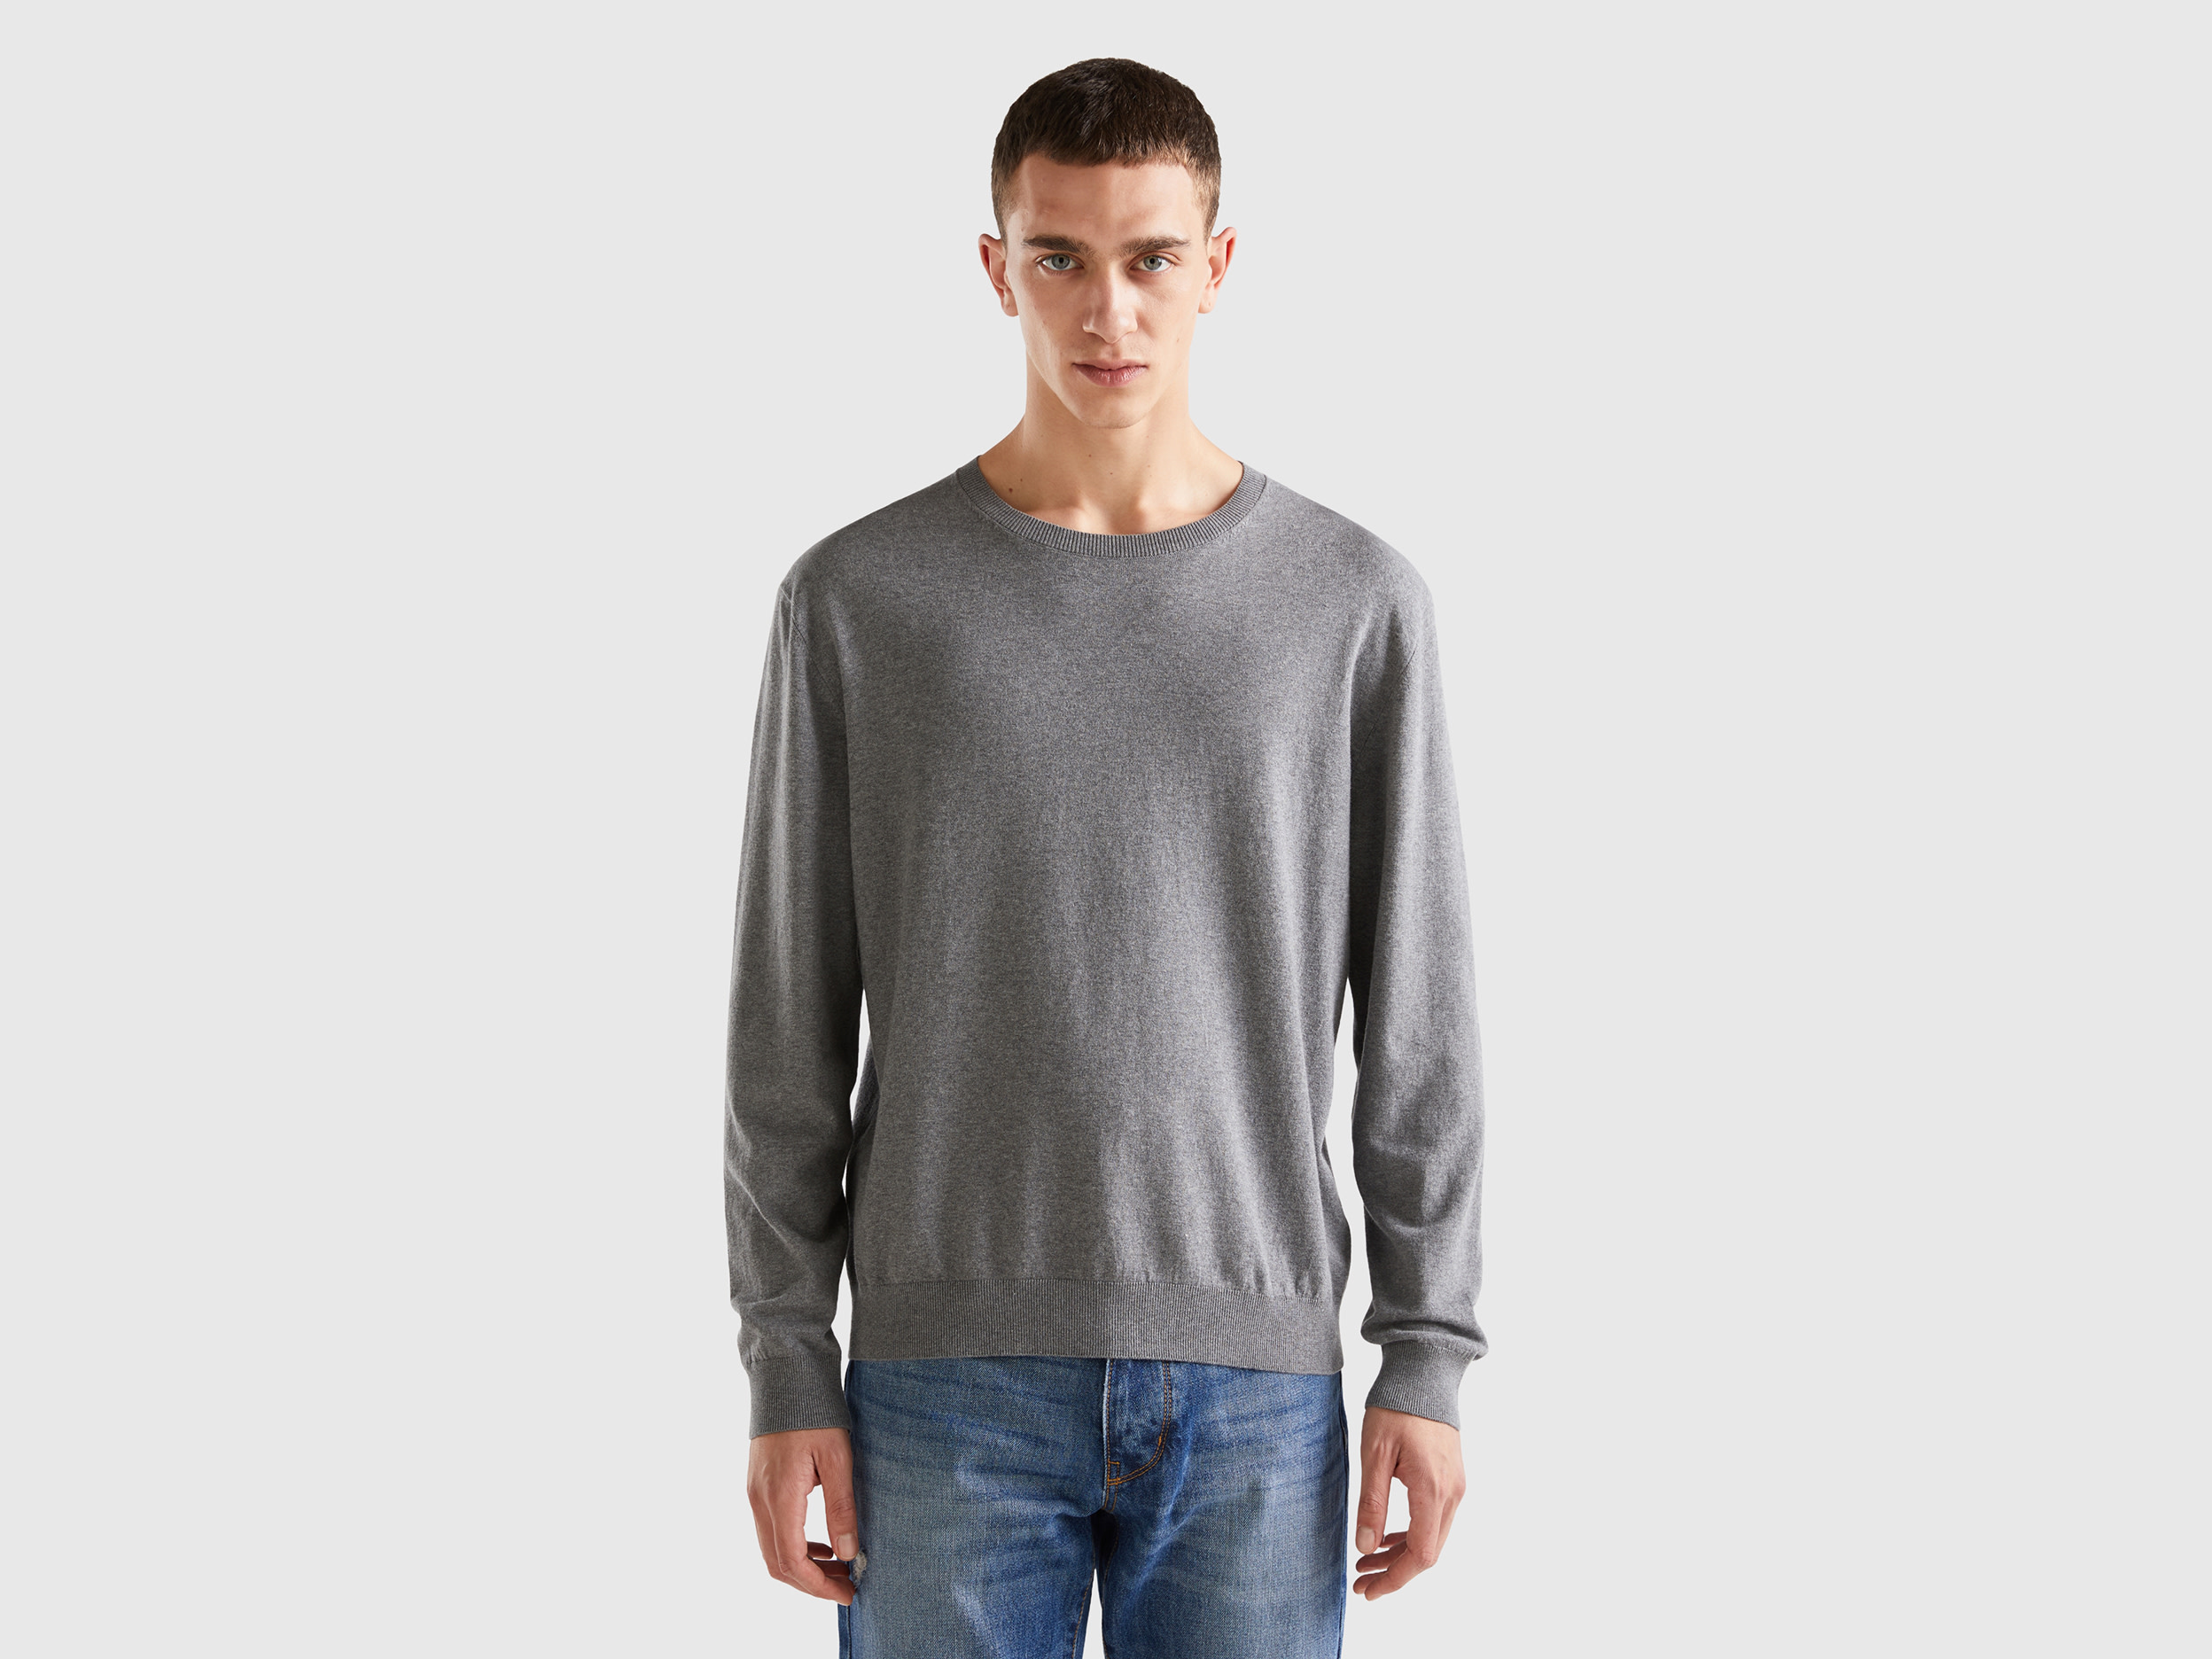 Benetton, Crew Neck Sweater In Lightweight Cotton Blend, size XXL, Dark Gray, Men